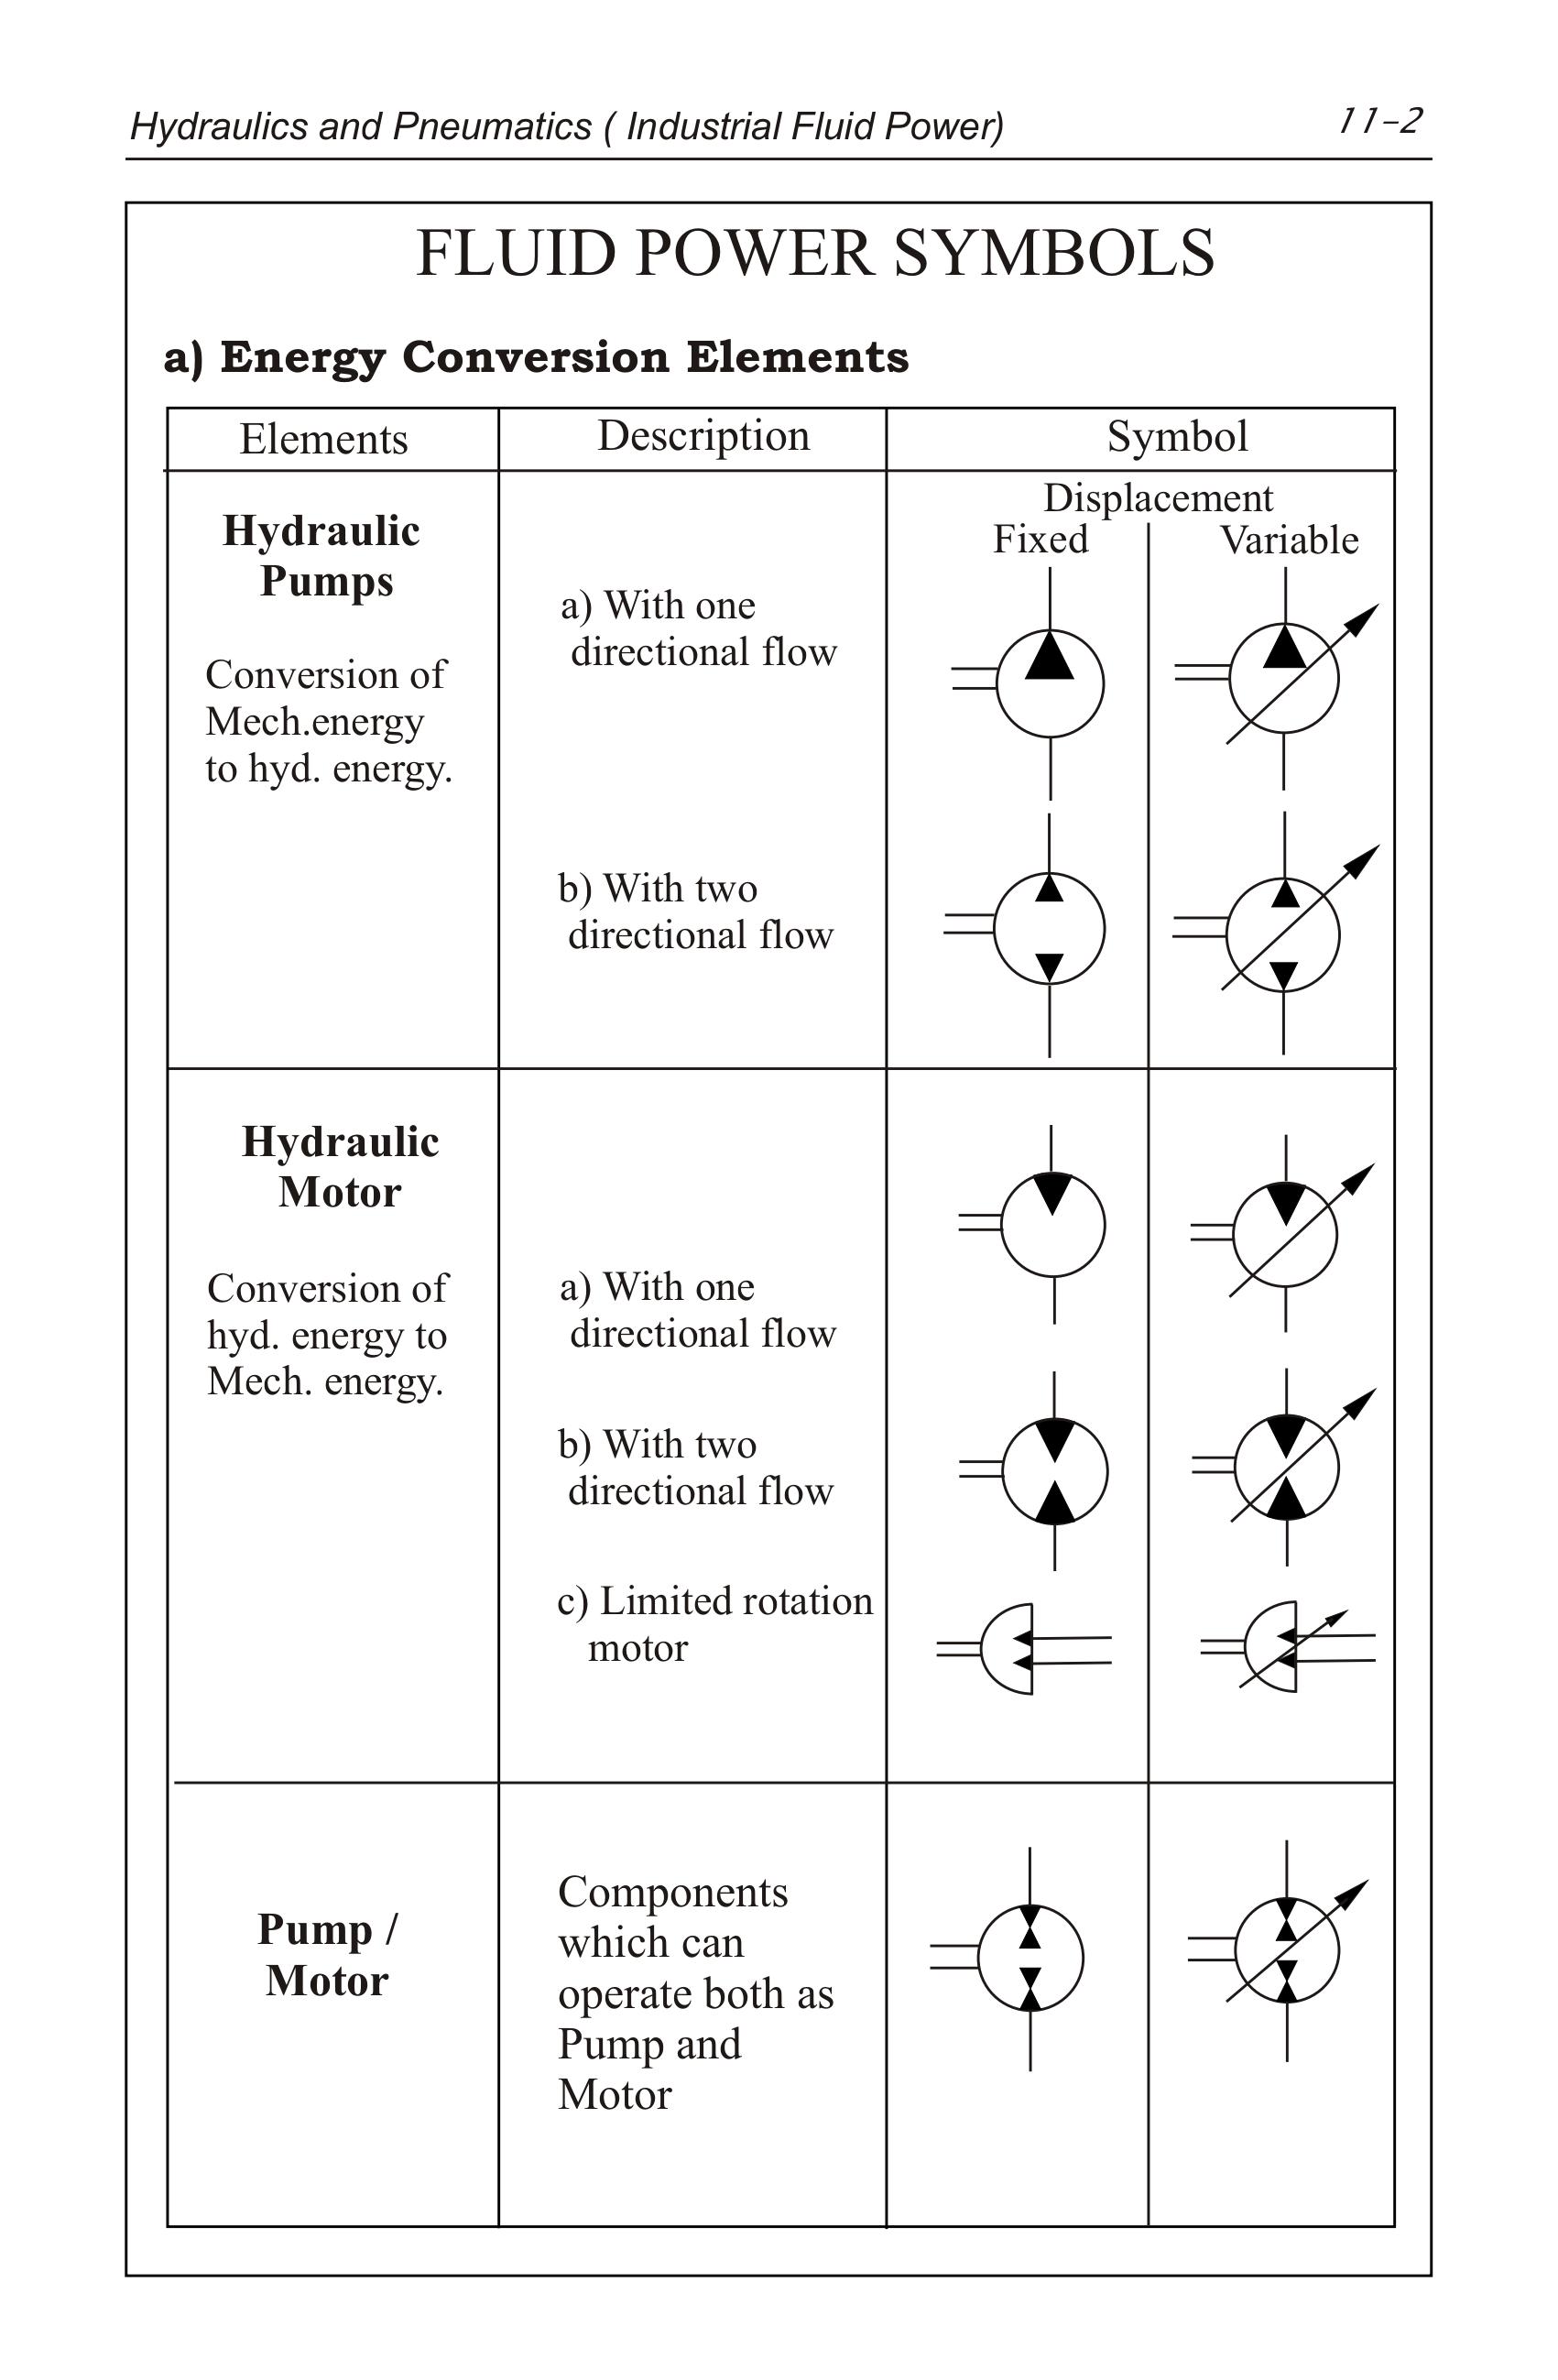 Hydraulics Pneumatics Symbols